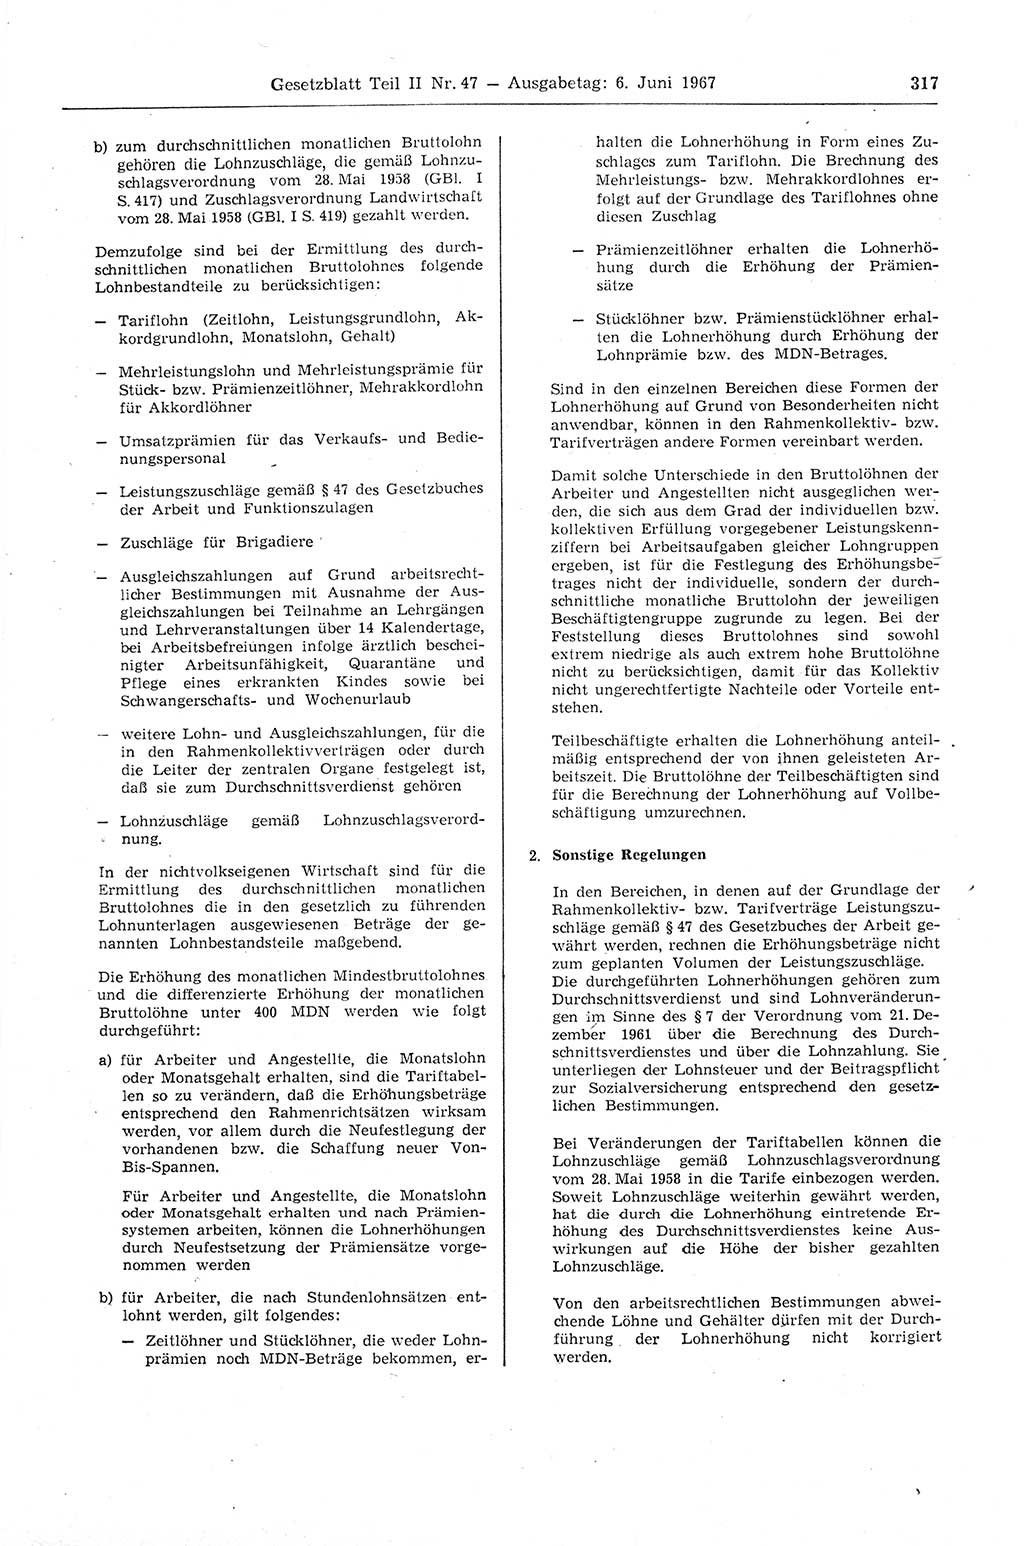 Gesetzblatt (GBl.) der Deutschen Demokratischen Republik (DDR) Teil ⅠⅠ 1967, Seite 317 (GBl. DDR ⅠⅠ 1967, S. 317)